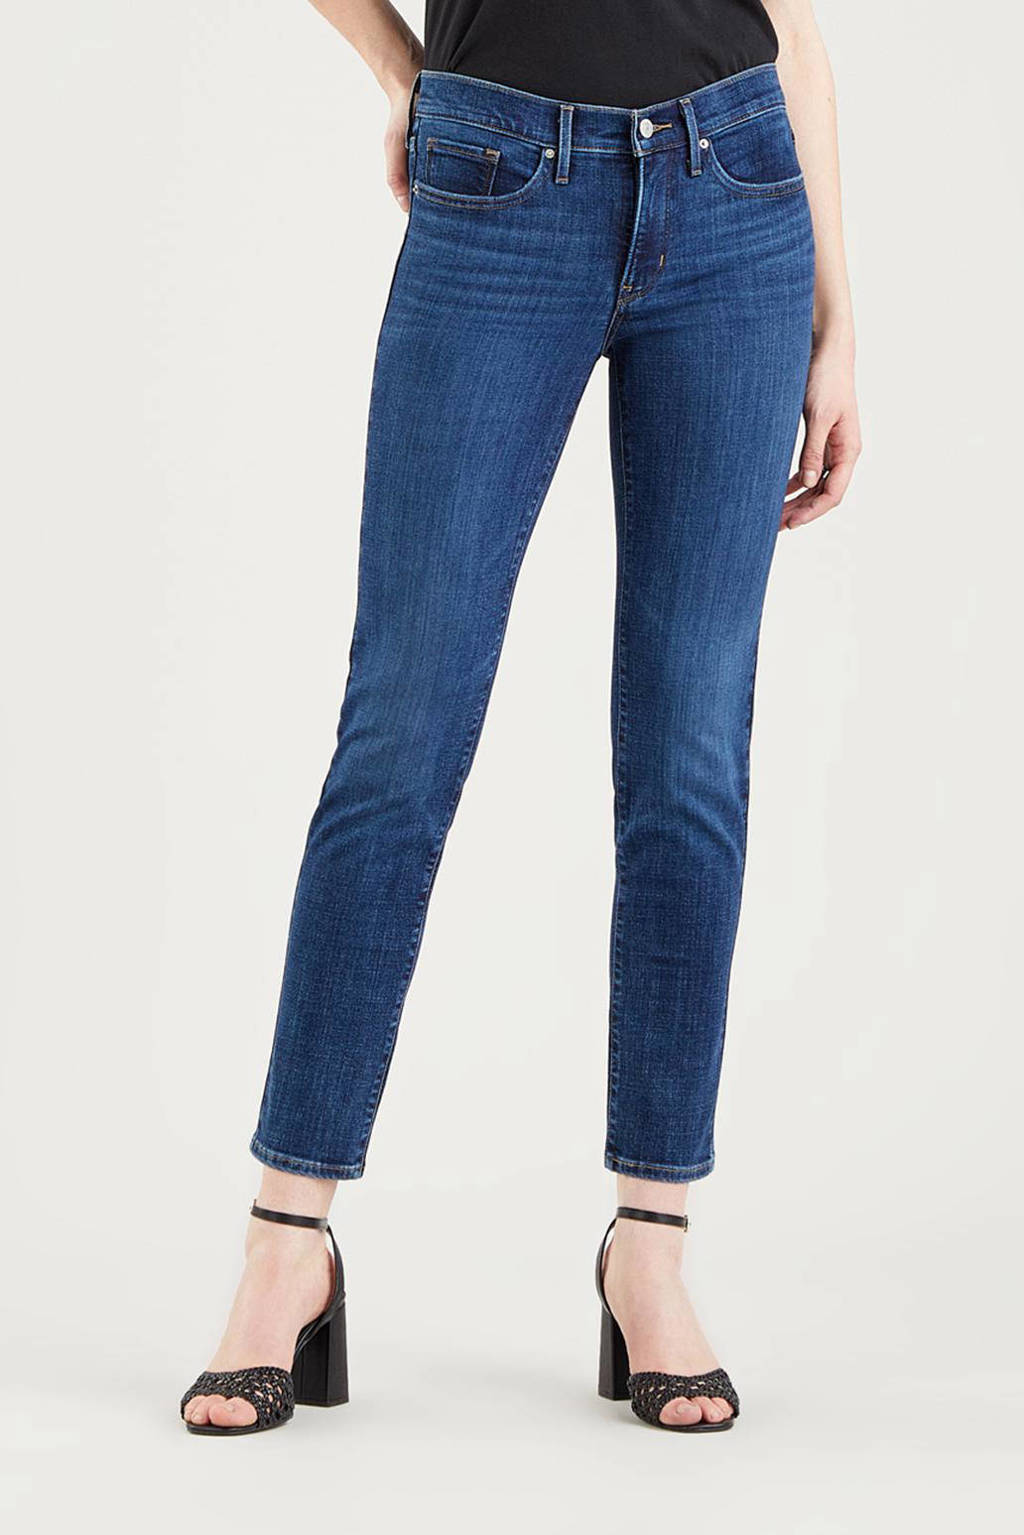 Donkerblauwe dames Levi's shaping slim fit jeans van stretchdenim met regular waist